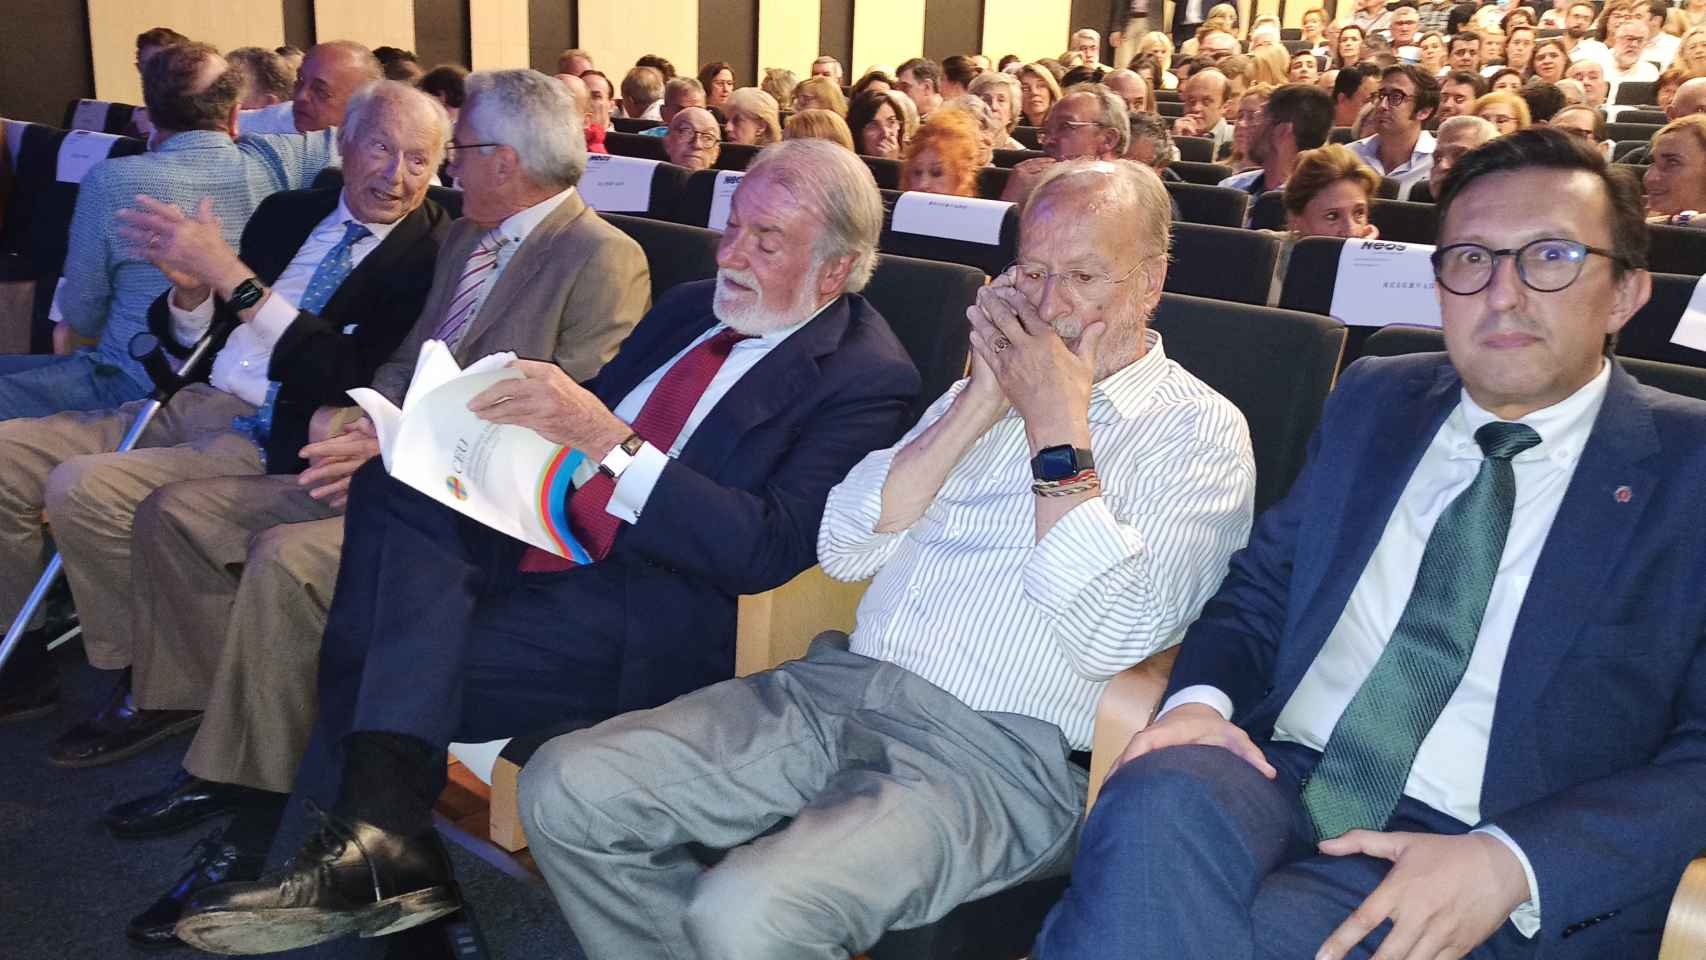 Jaime Mayor Oreja, Ortega Lara y Javier León de la Riva, hoy en la presentación de Neos en Valladolid.